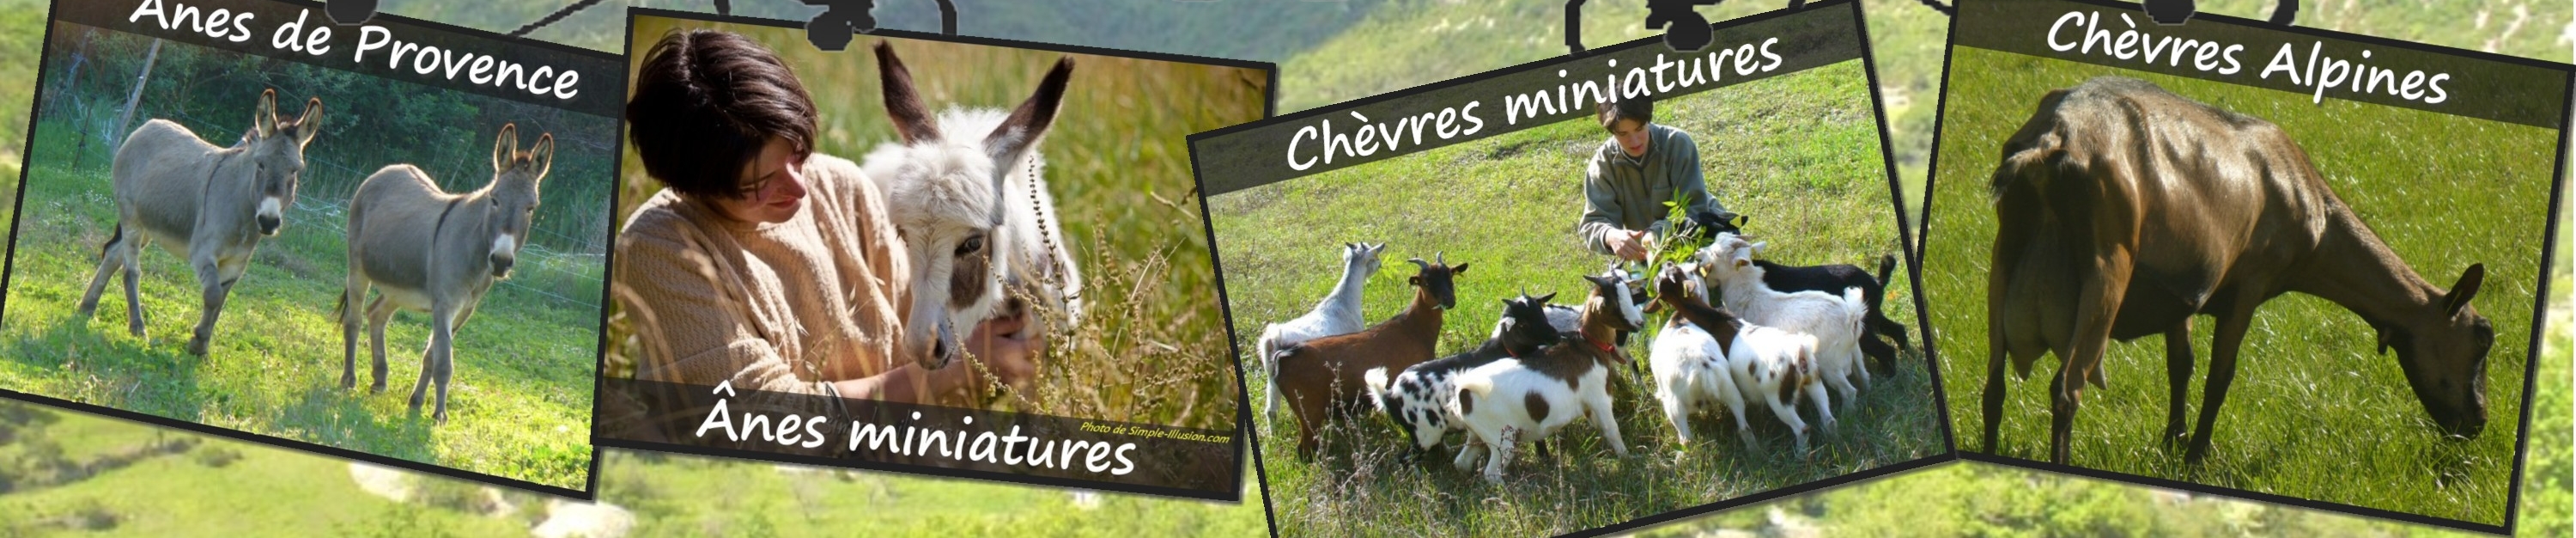 www.ferme-des-tourelles.net - Pastoralisme minichèvres 2017